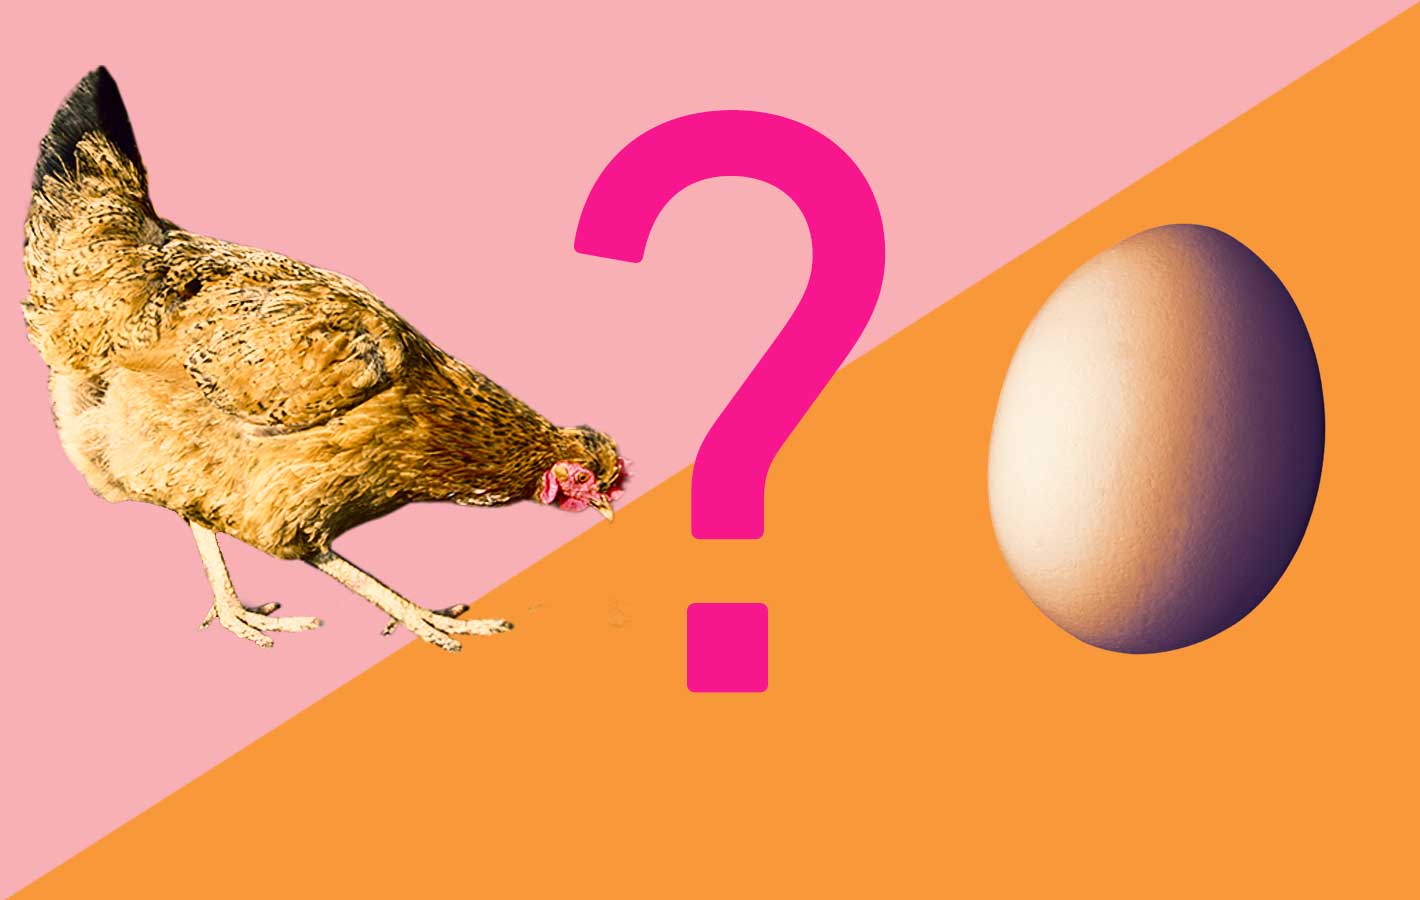 Wielkanoc 2017: co było pierwsze – jajko czy kura? [SONDA]